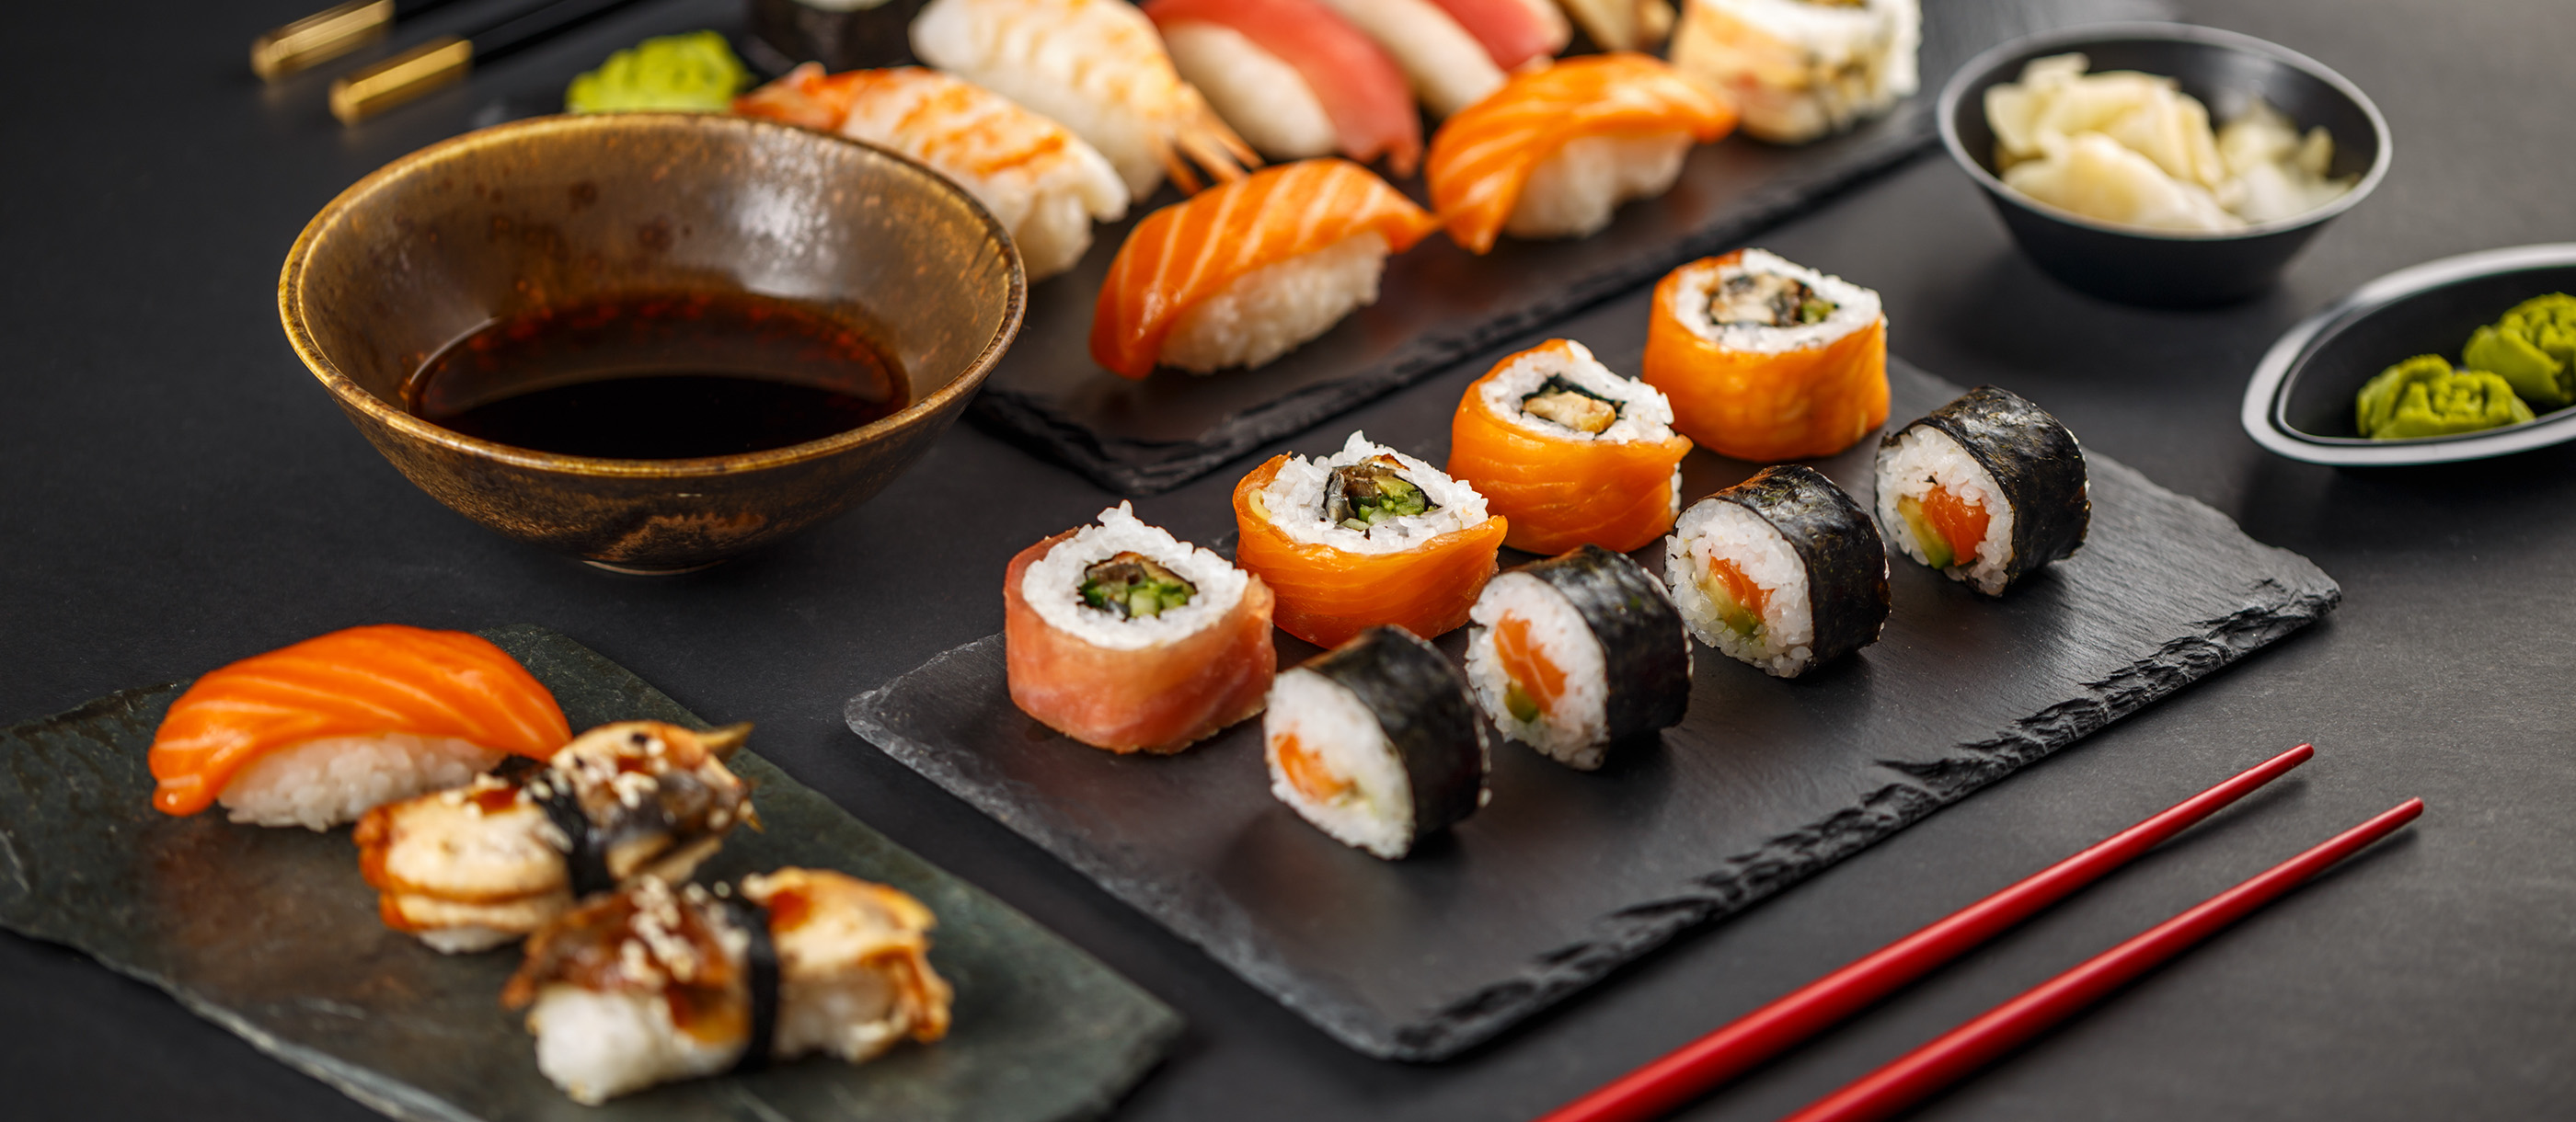 100 Most Popular Japanese Foods - TasteAtlas